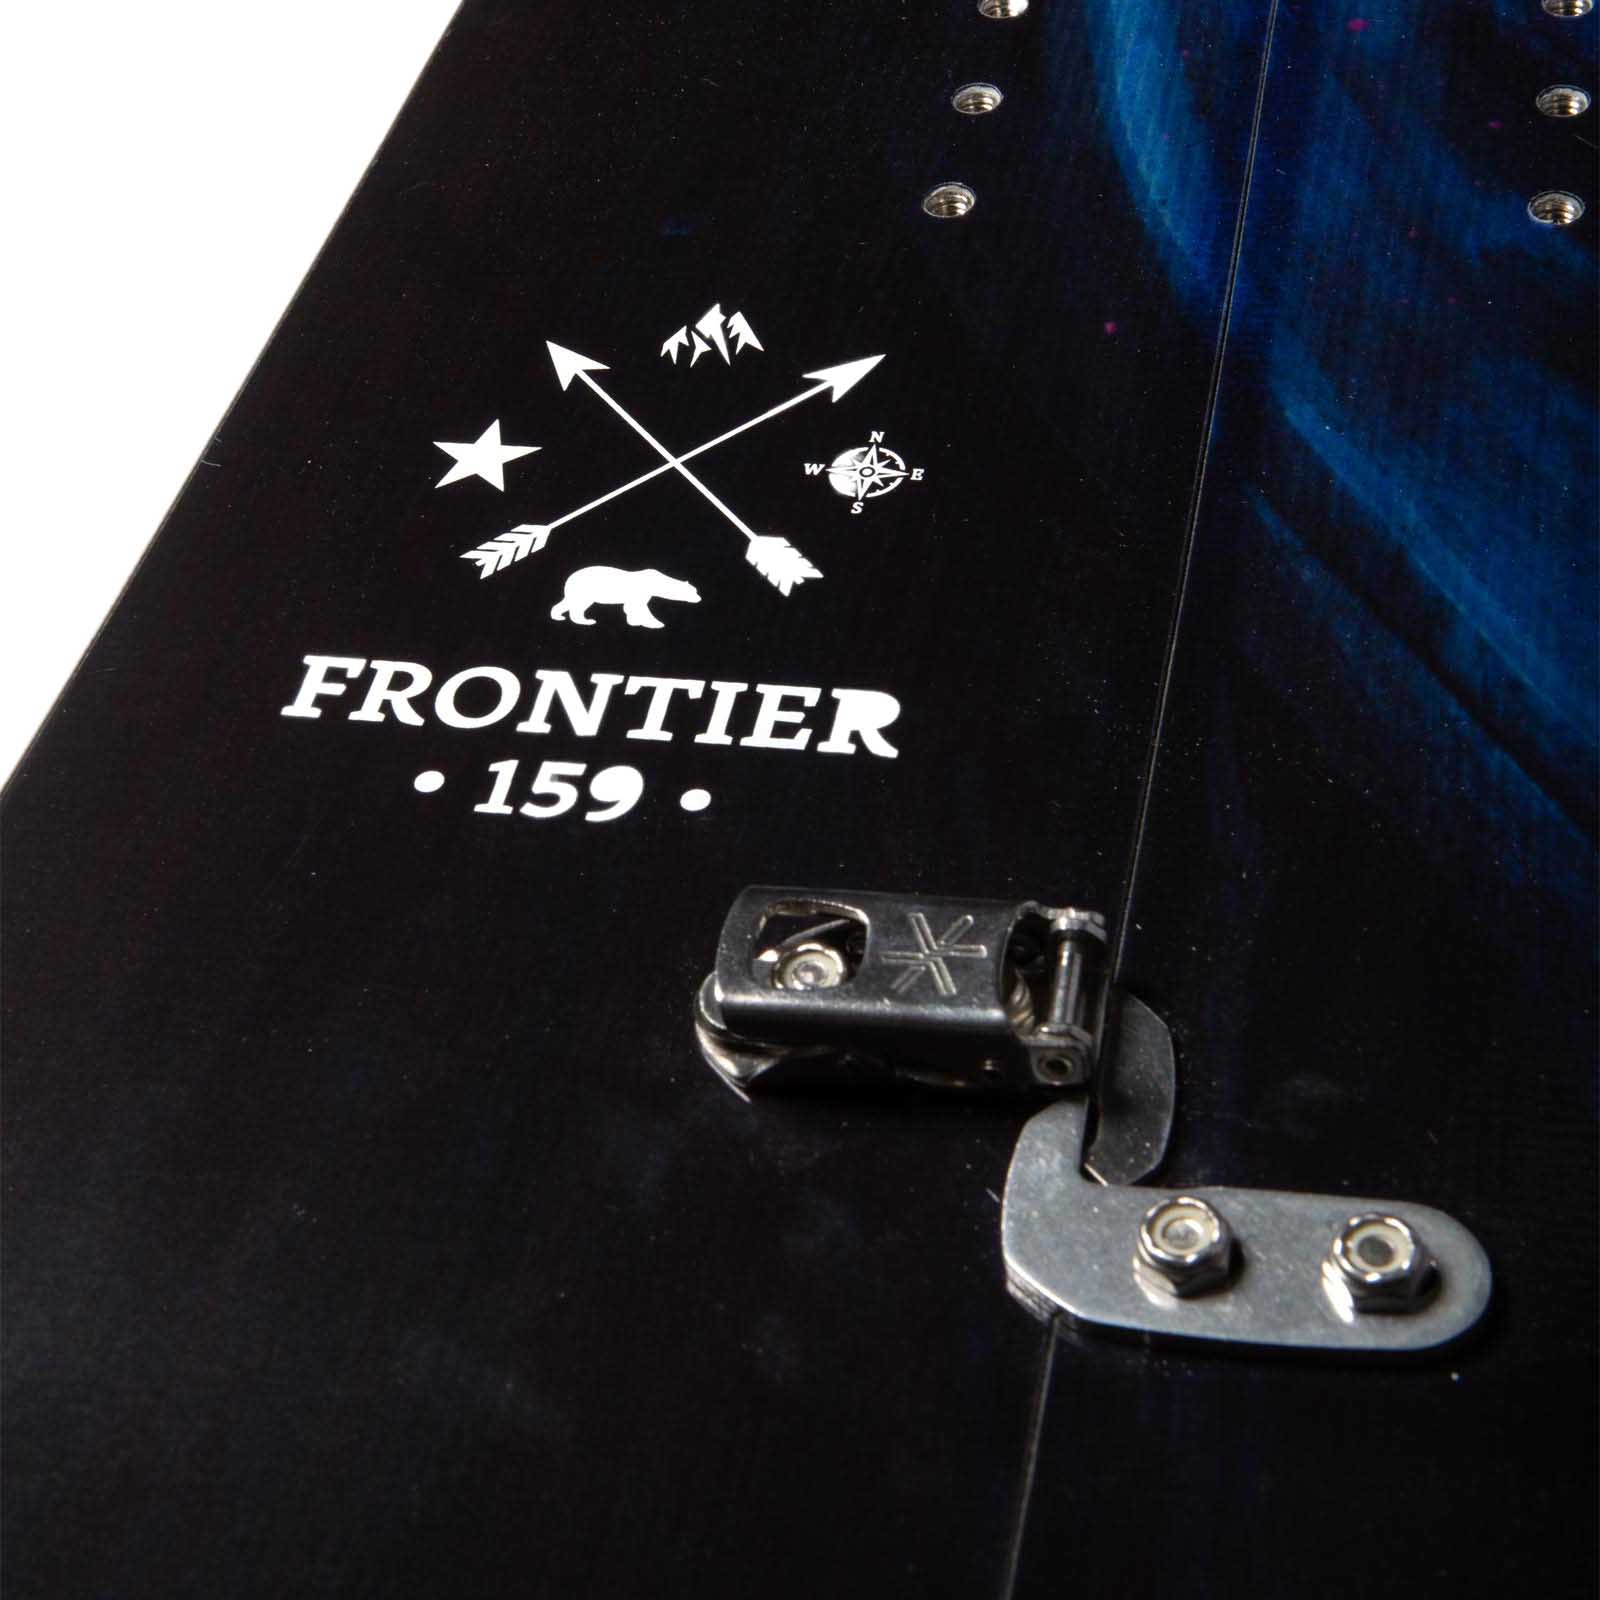 Jones Frontier Hybrid Camber Splitboard